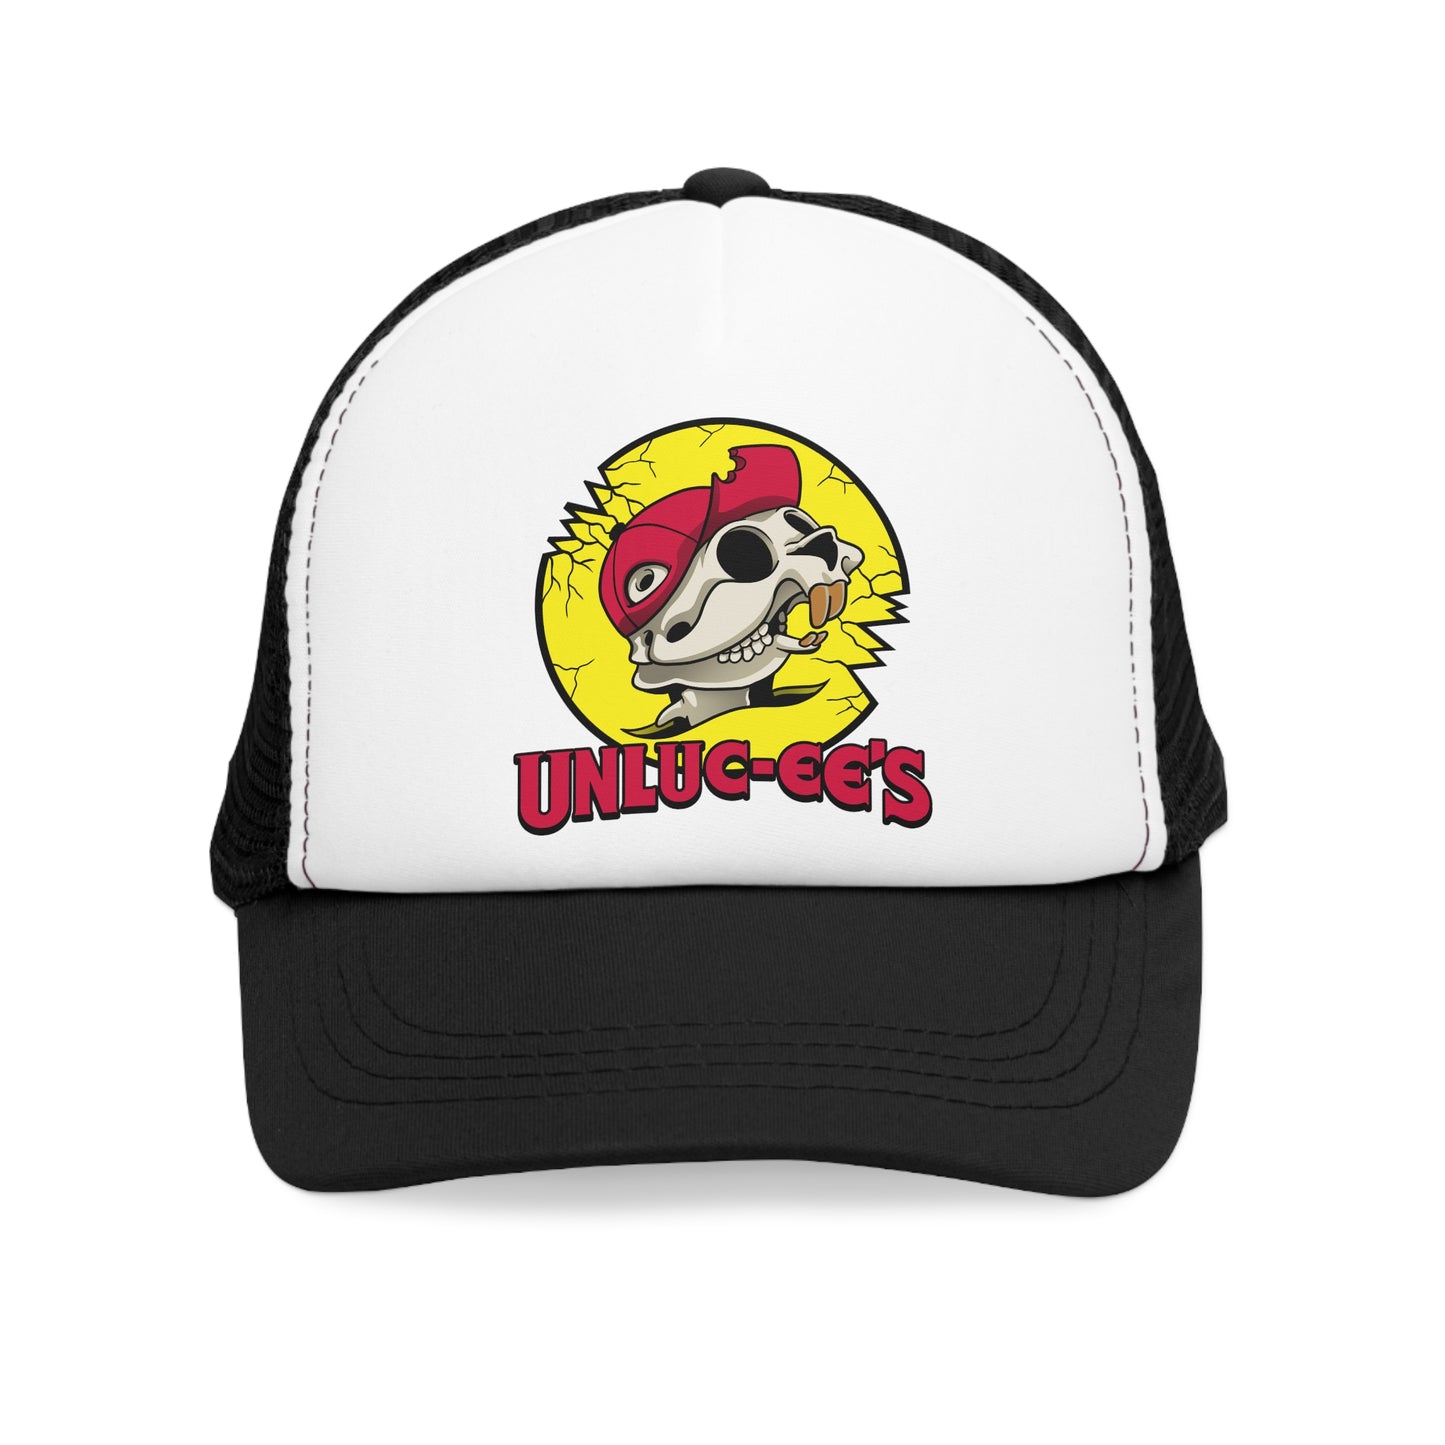 UNLUC-EES trucker hat